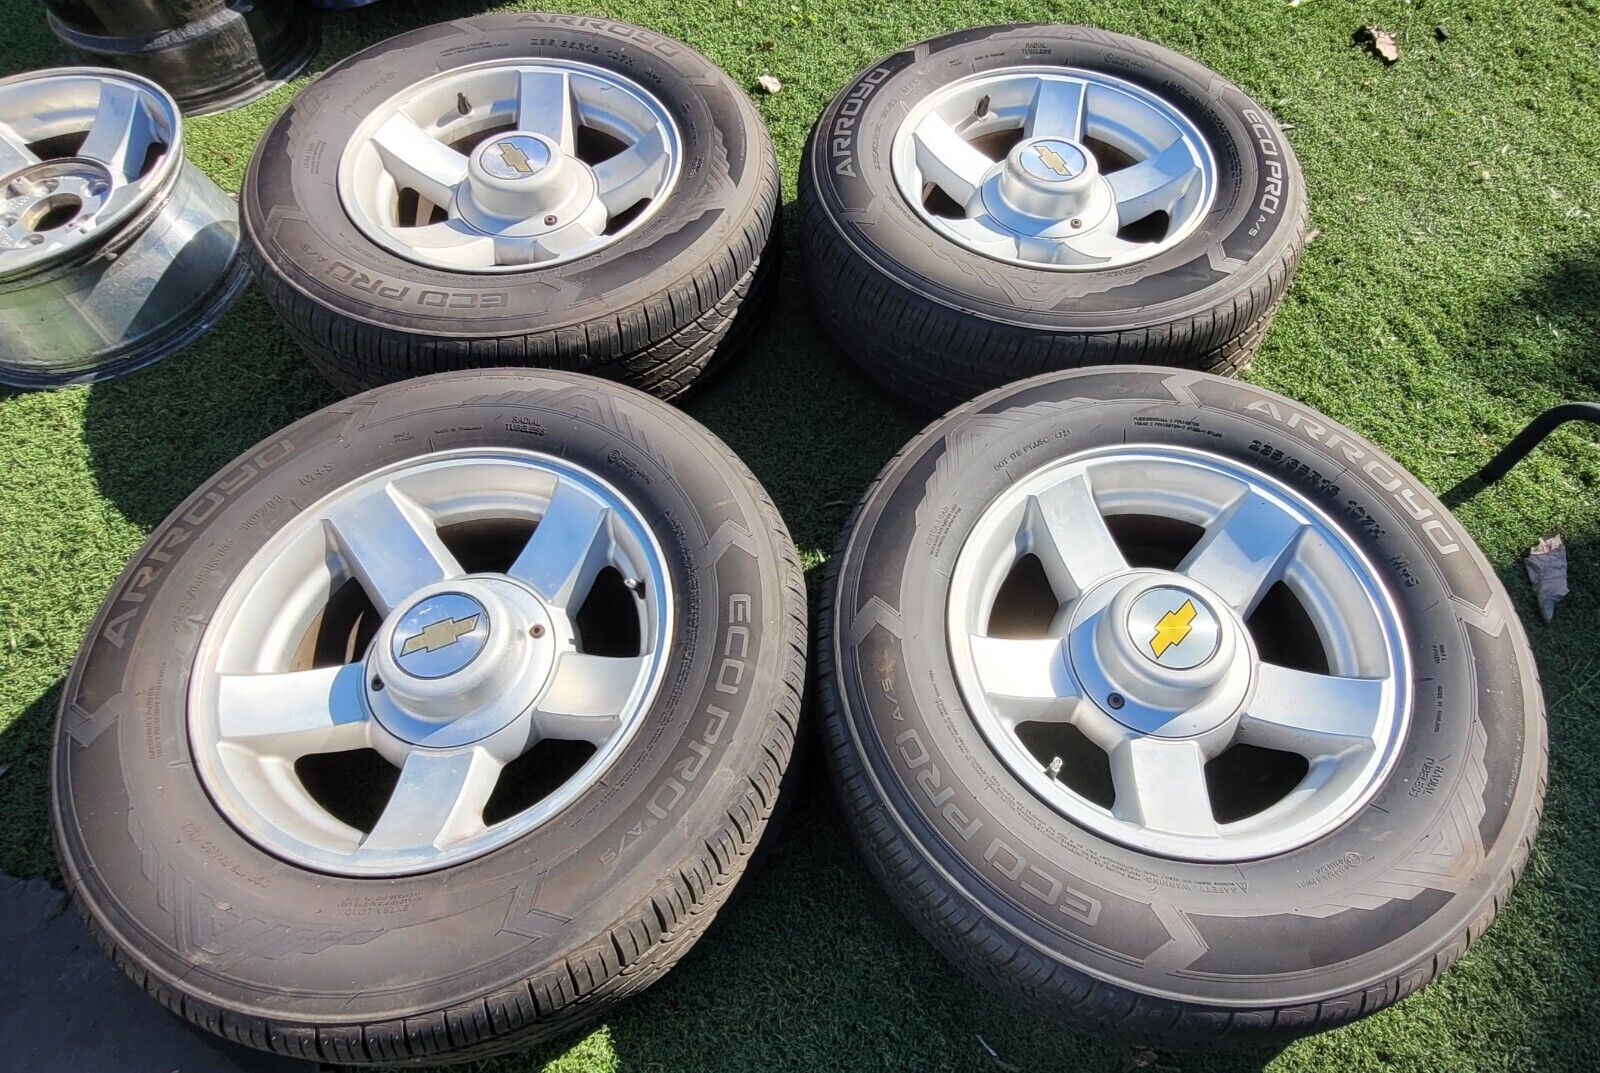 16x7 OEM Tahoe Limited Edition wheels 5x5 Chevy rims tires 235/65R16 Silverado